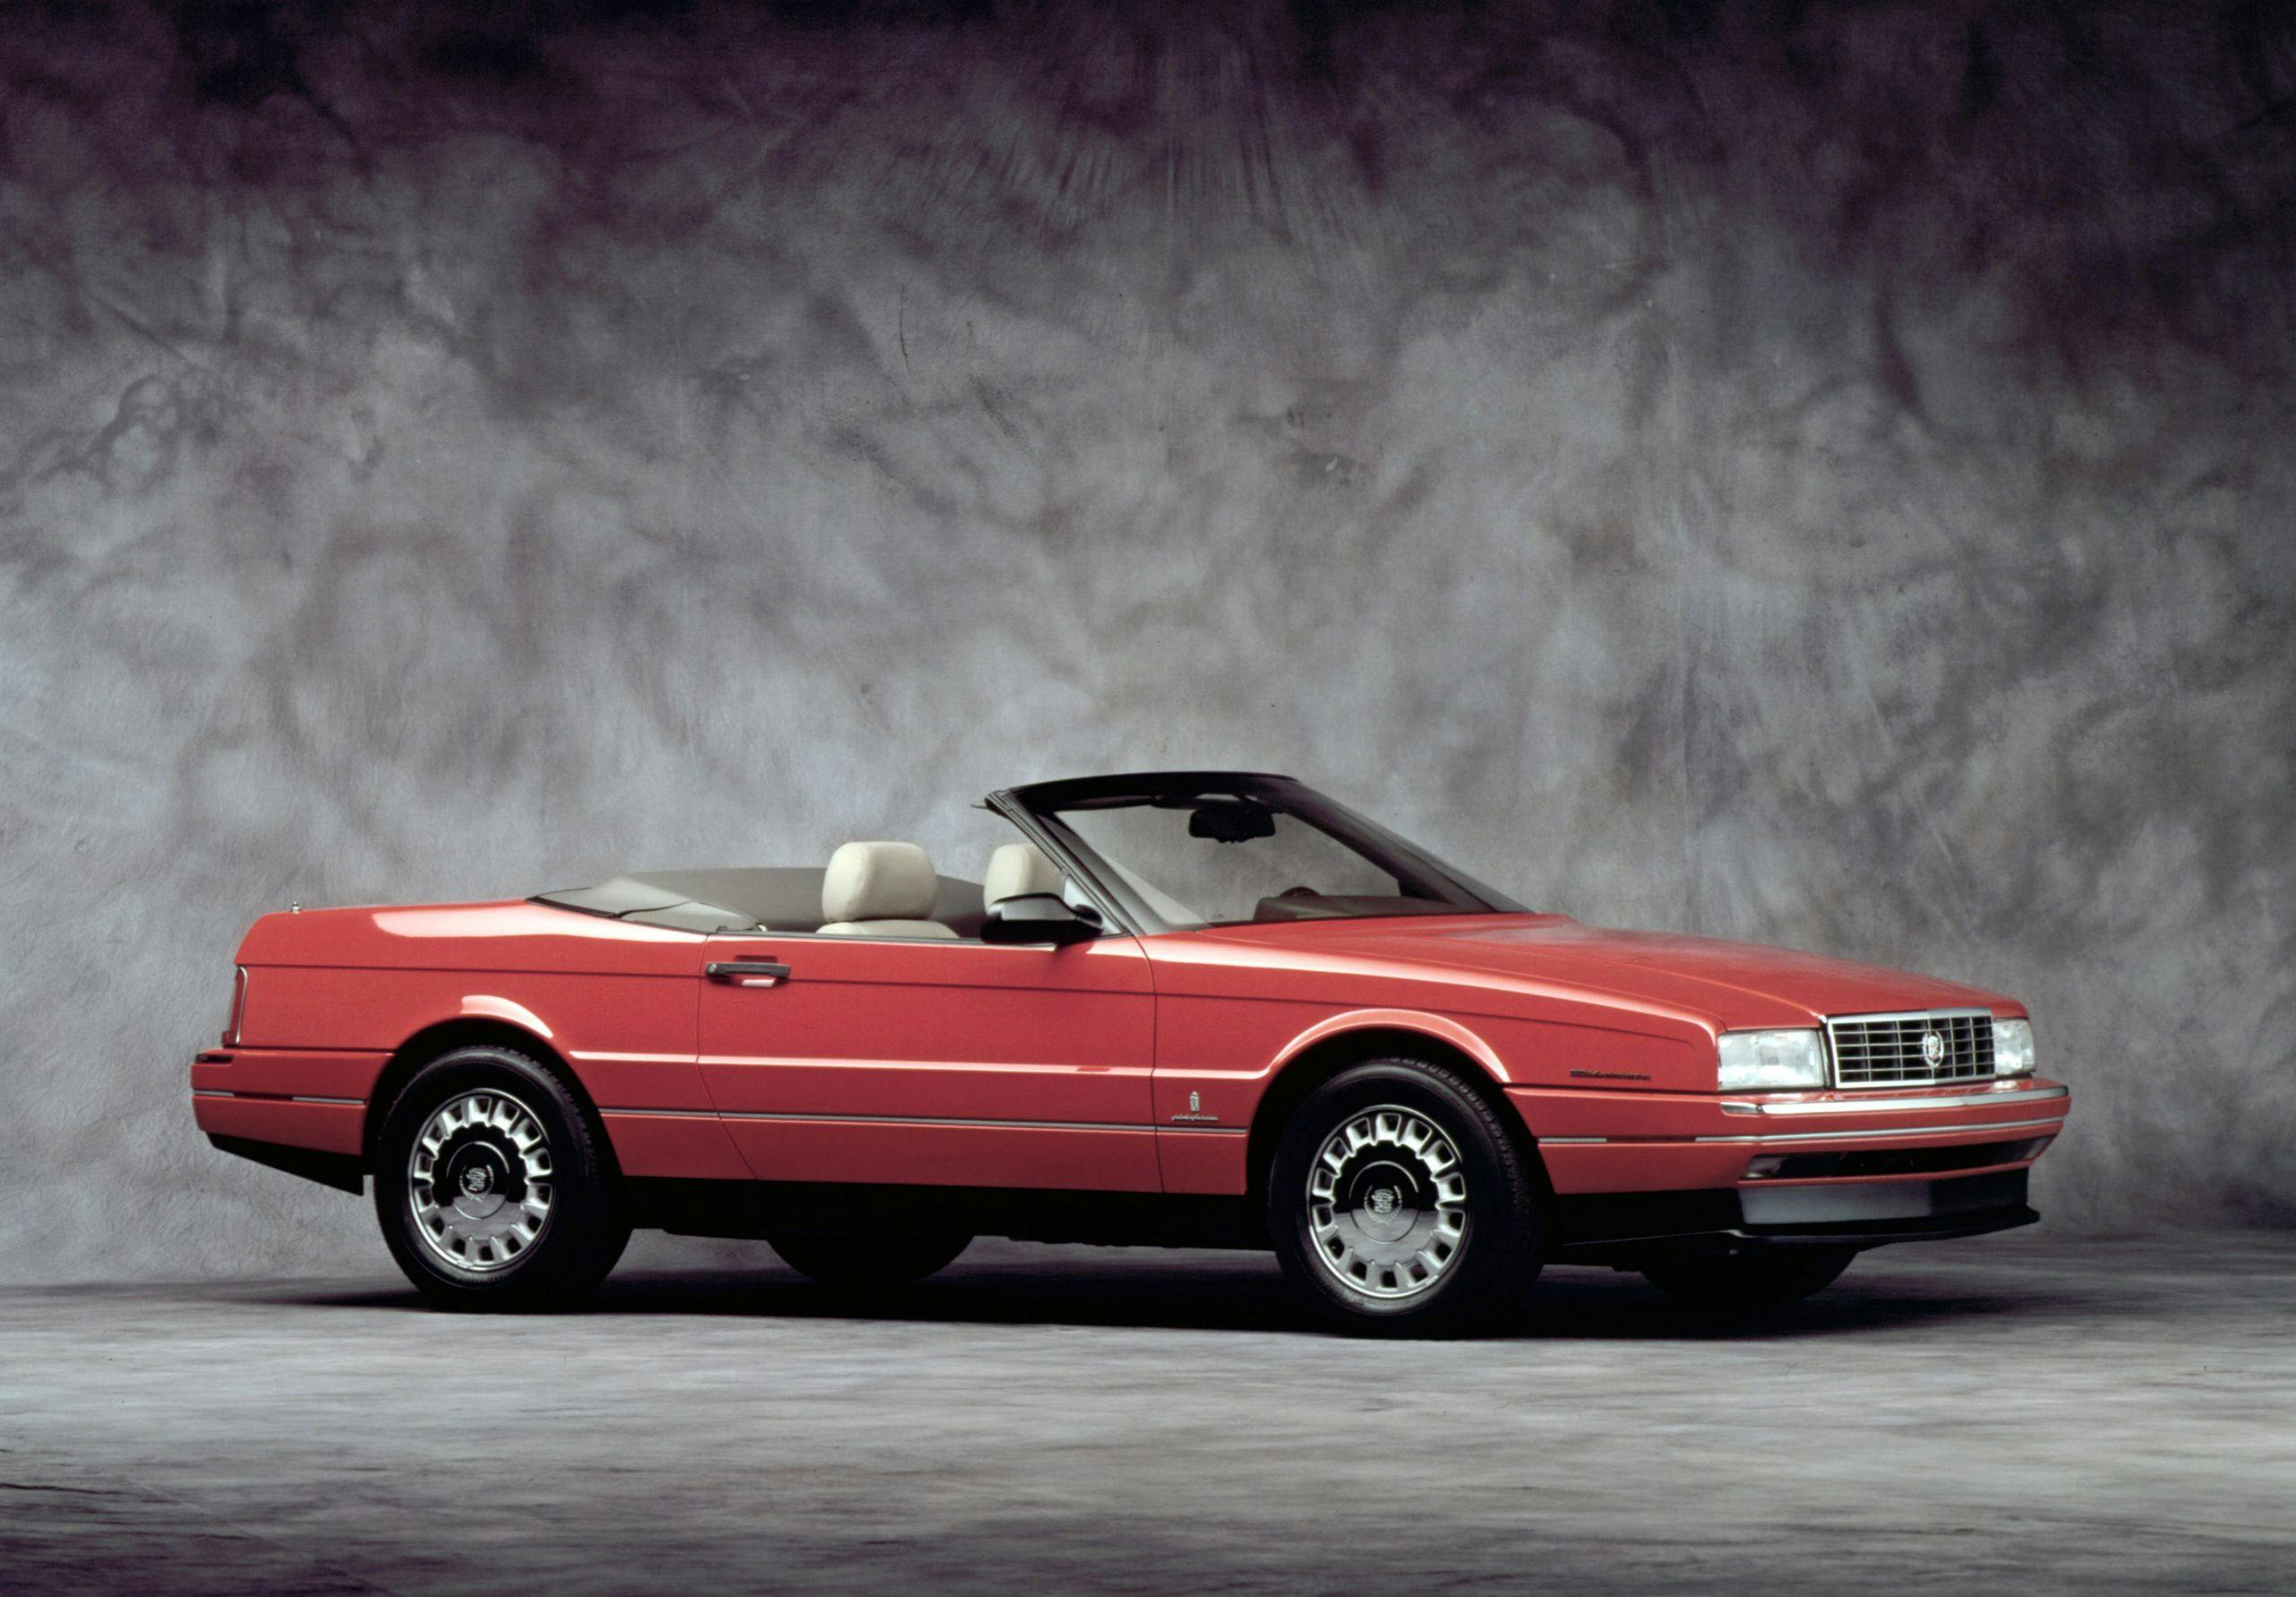 1990 cadillac allante red convertible underappreciated classic cars